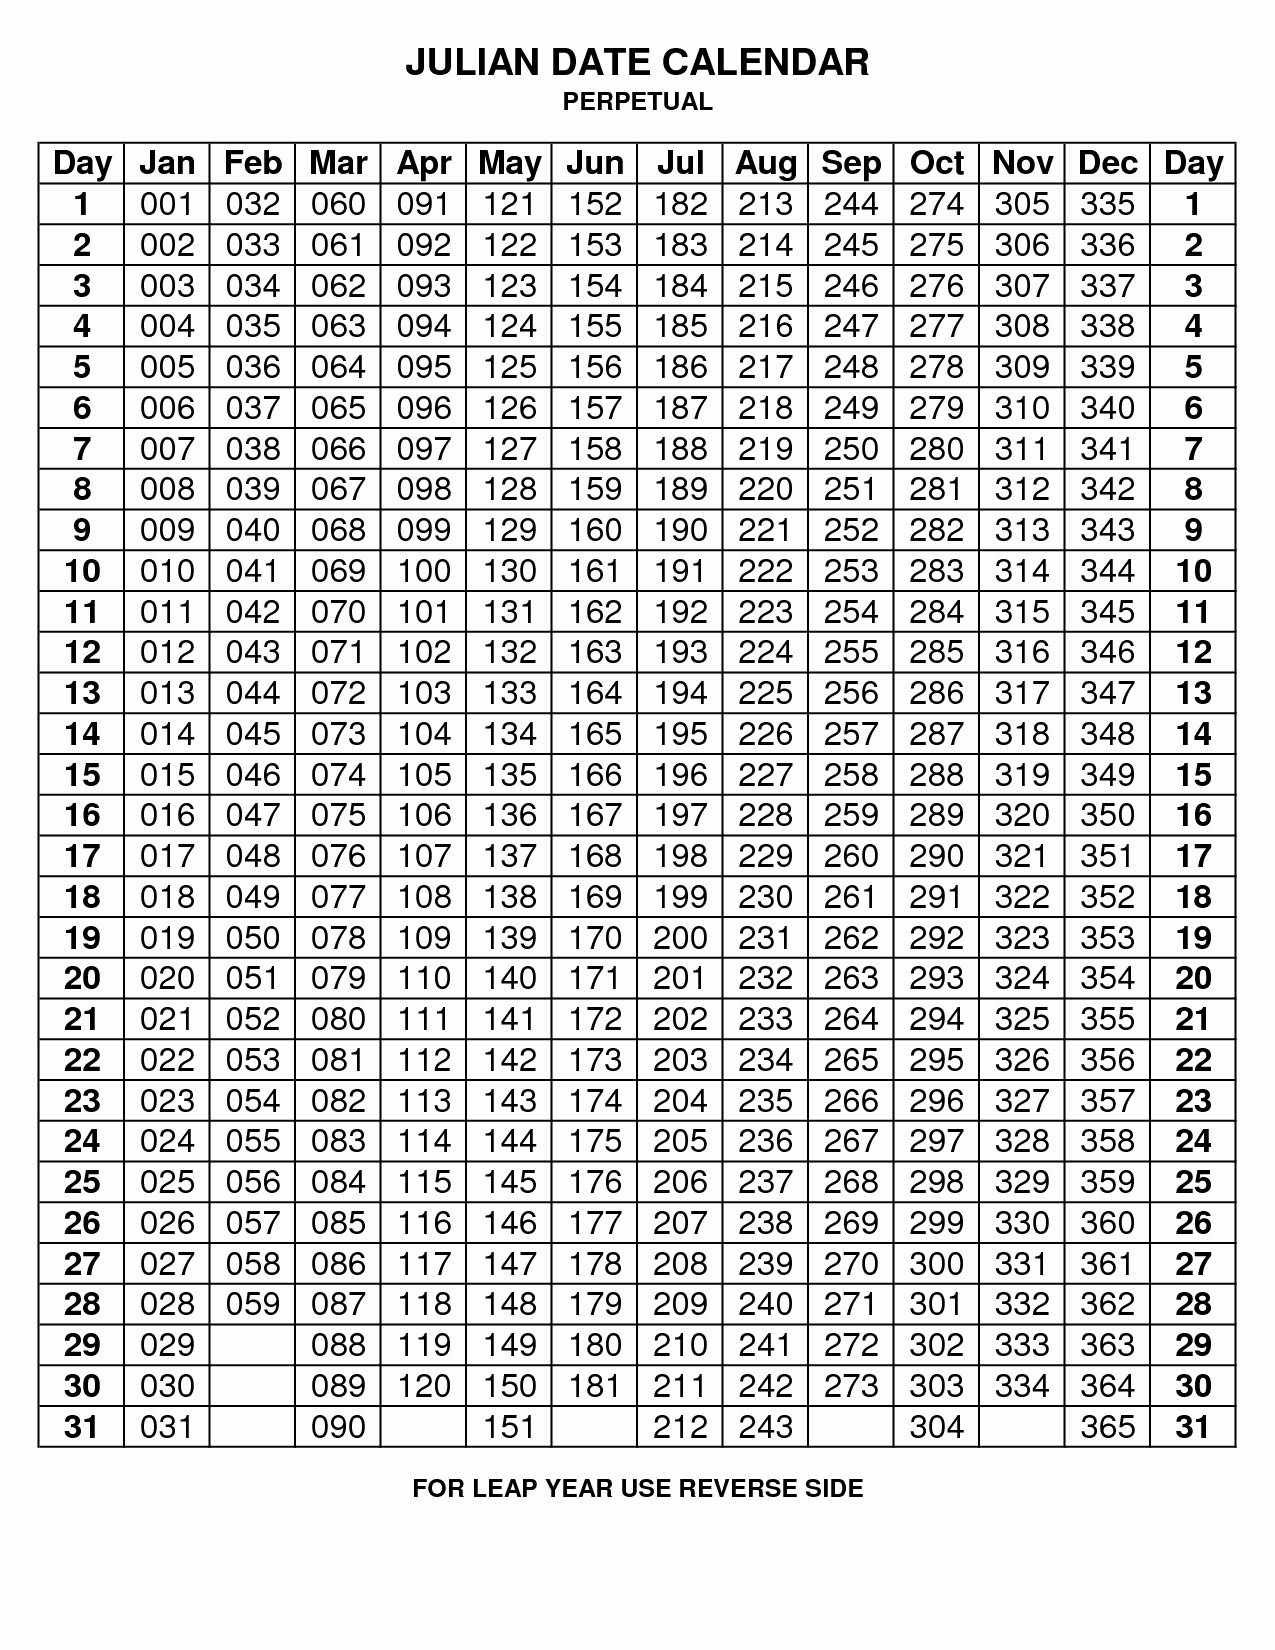 Depo Provera Perpetual Calendar To Print - Calendar  2021 Depo Shot Schedule